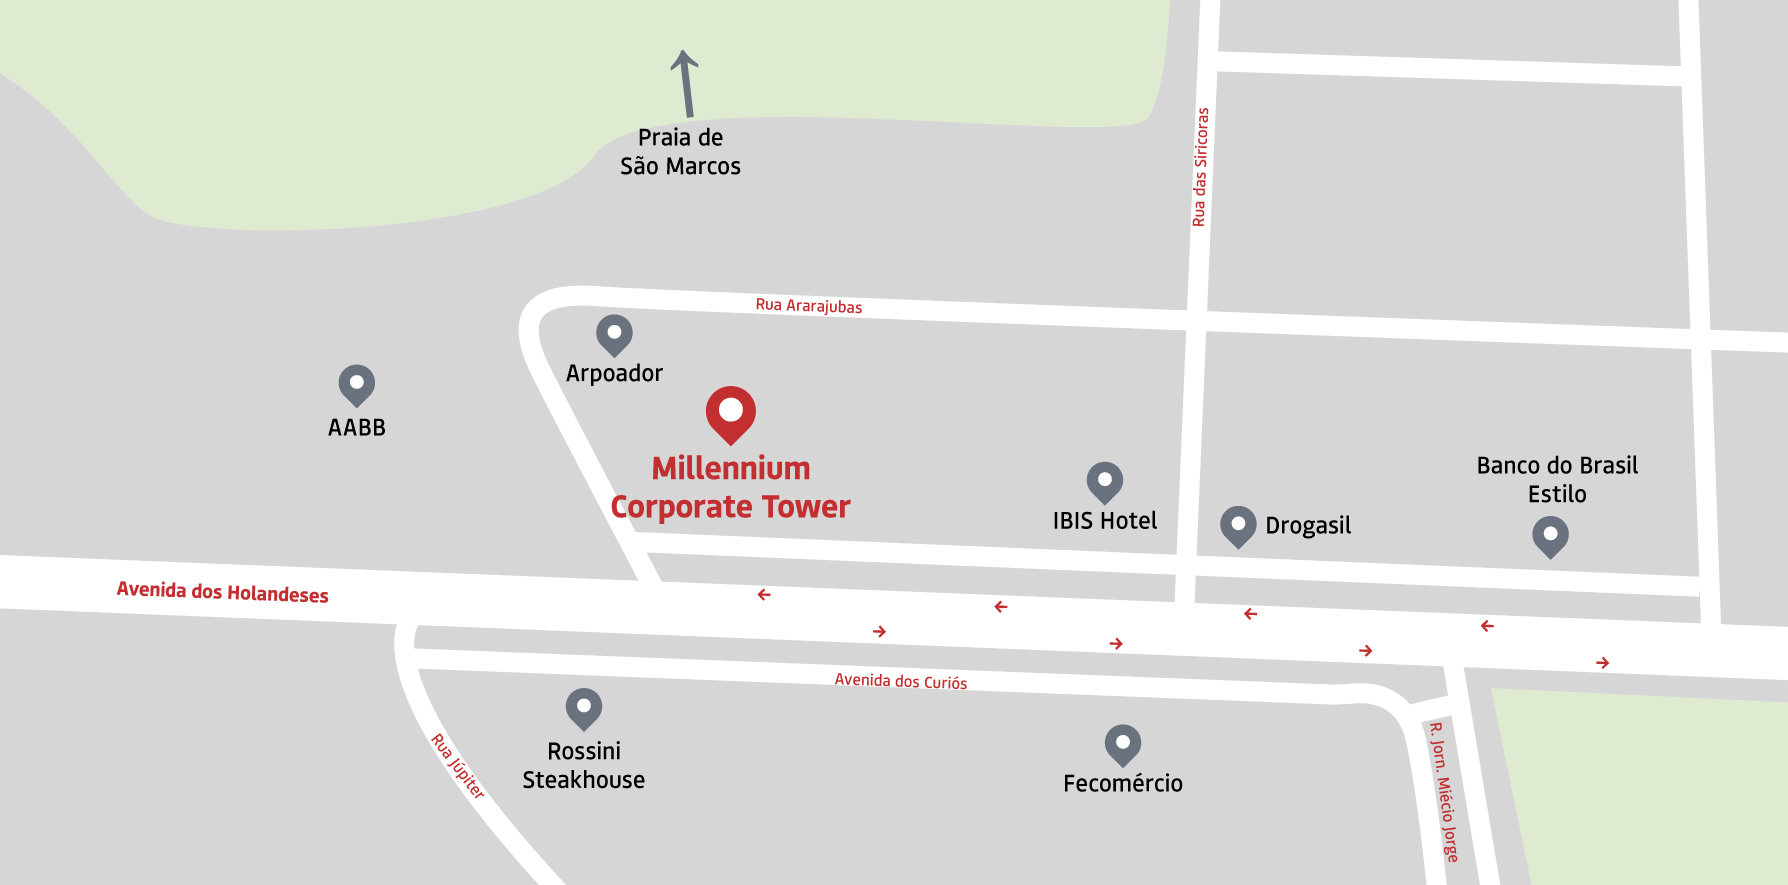 Millennium Corporate Tower